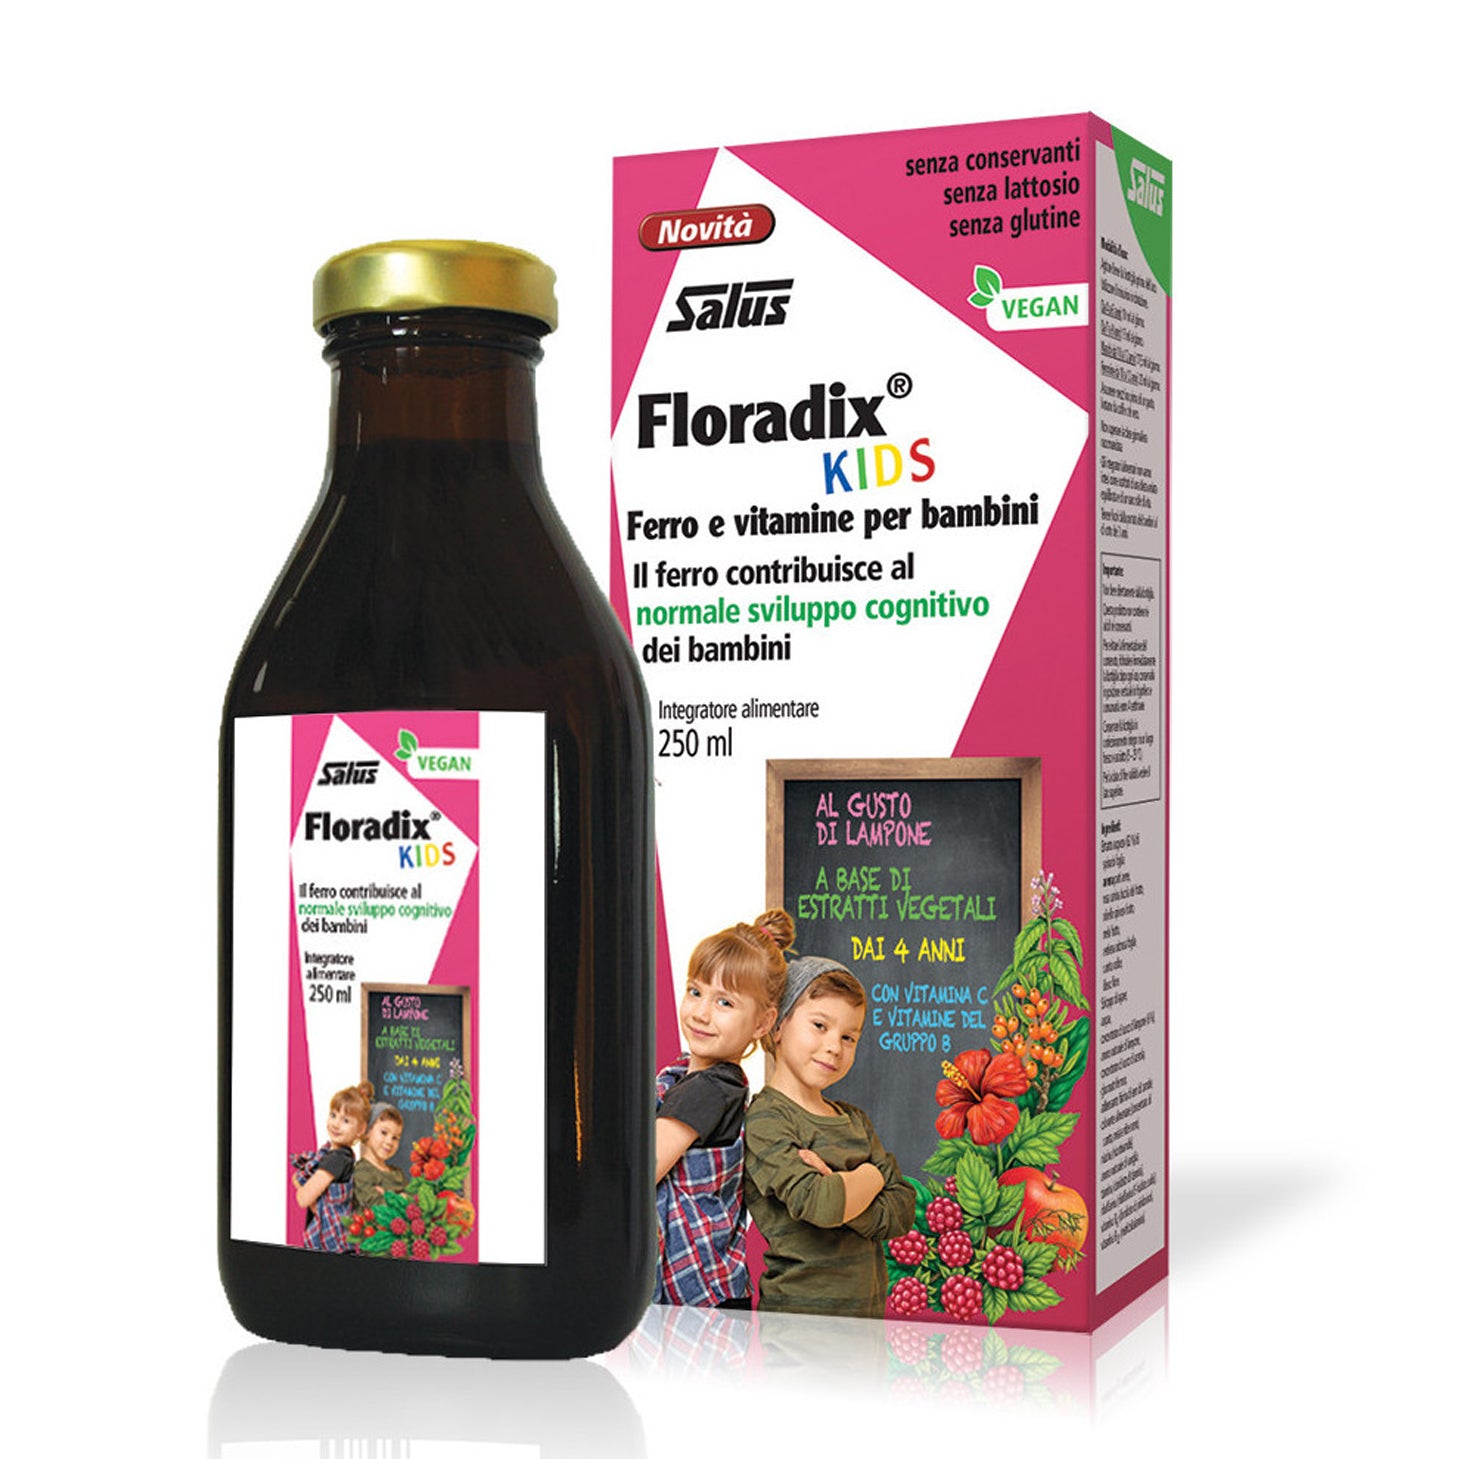 sciroppo floradix kids ferro vitamine